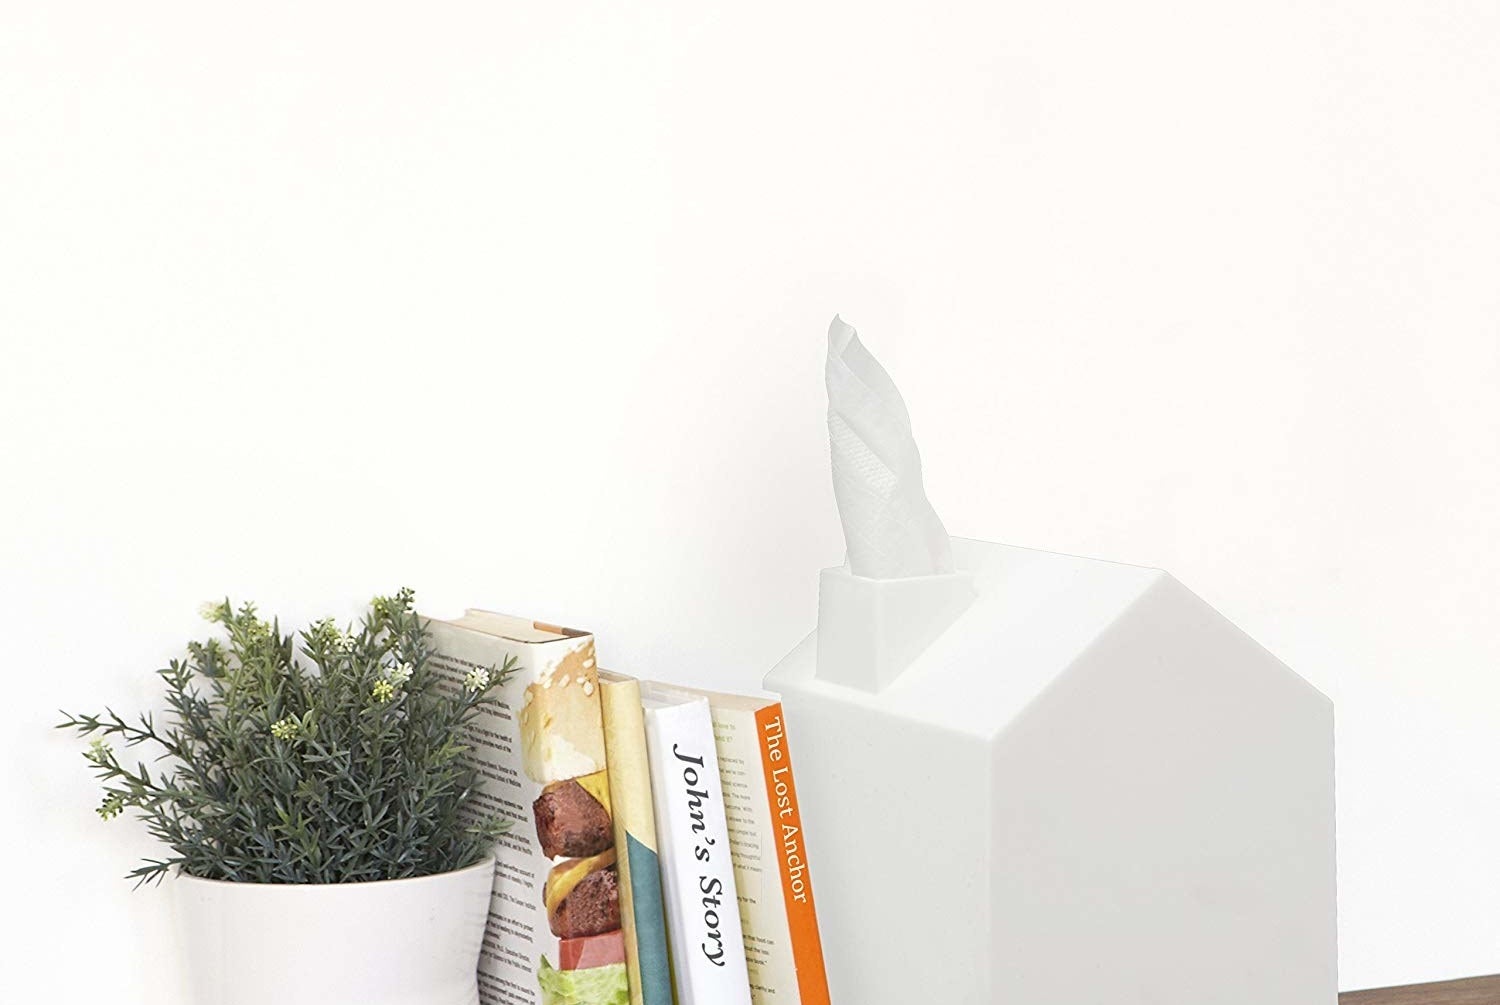 屋形纸巾盒的设计让组织看起来像烟的烟囱”class=